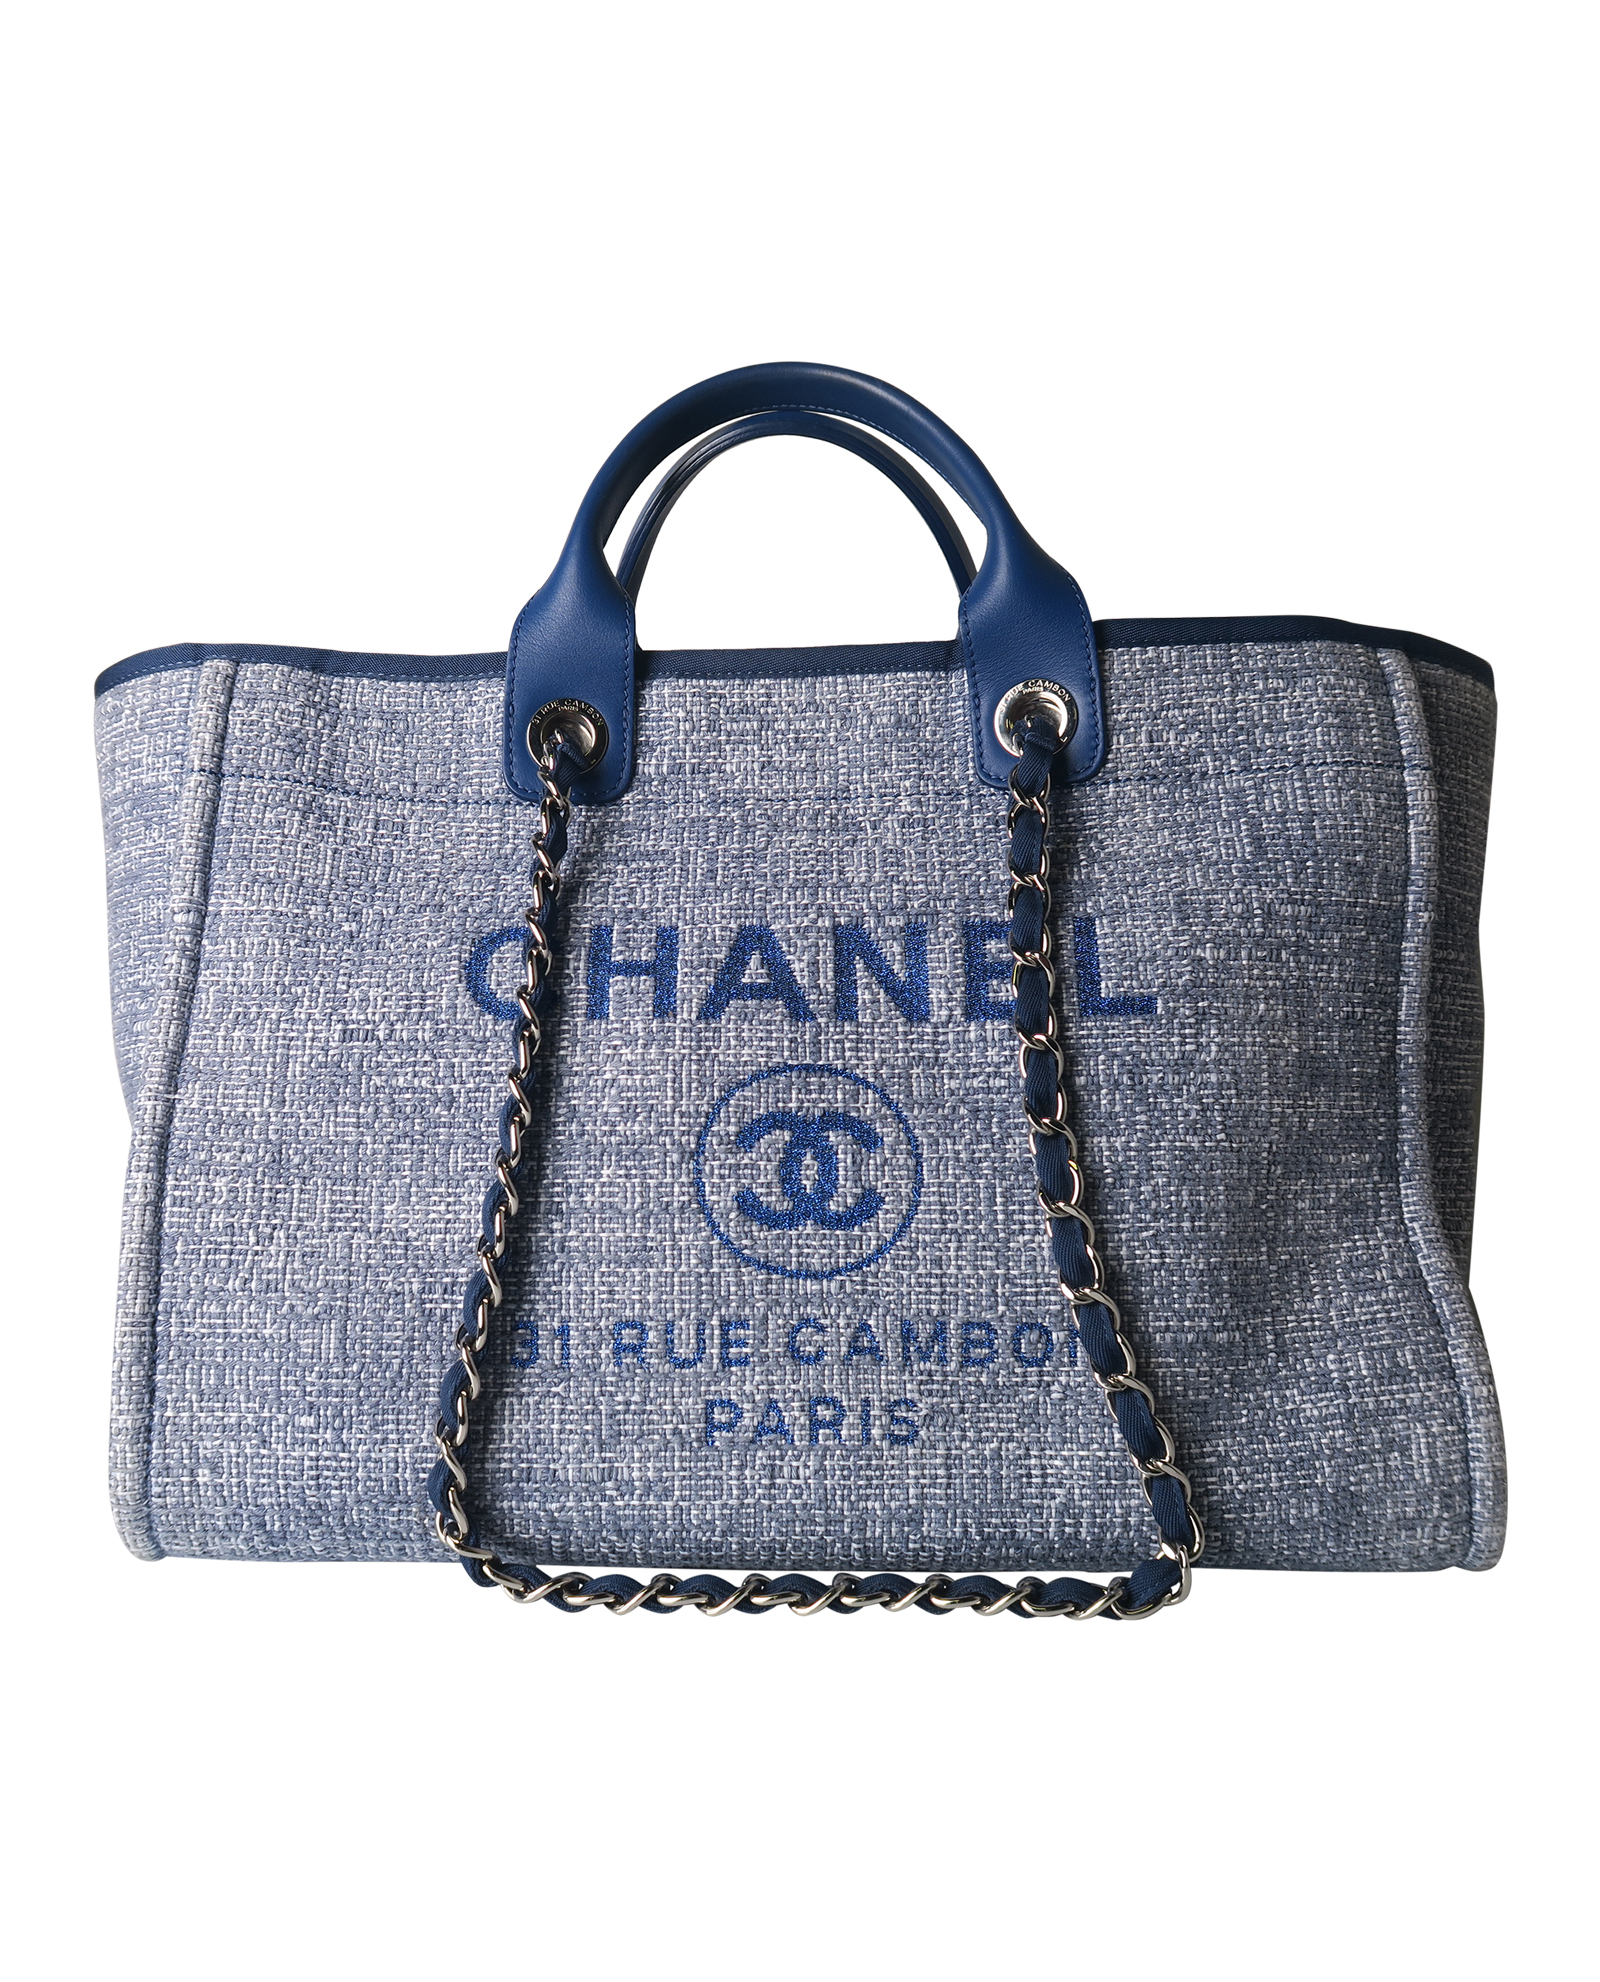 Deauville Tote, Chanel - Designer Exchange